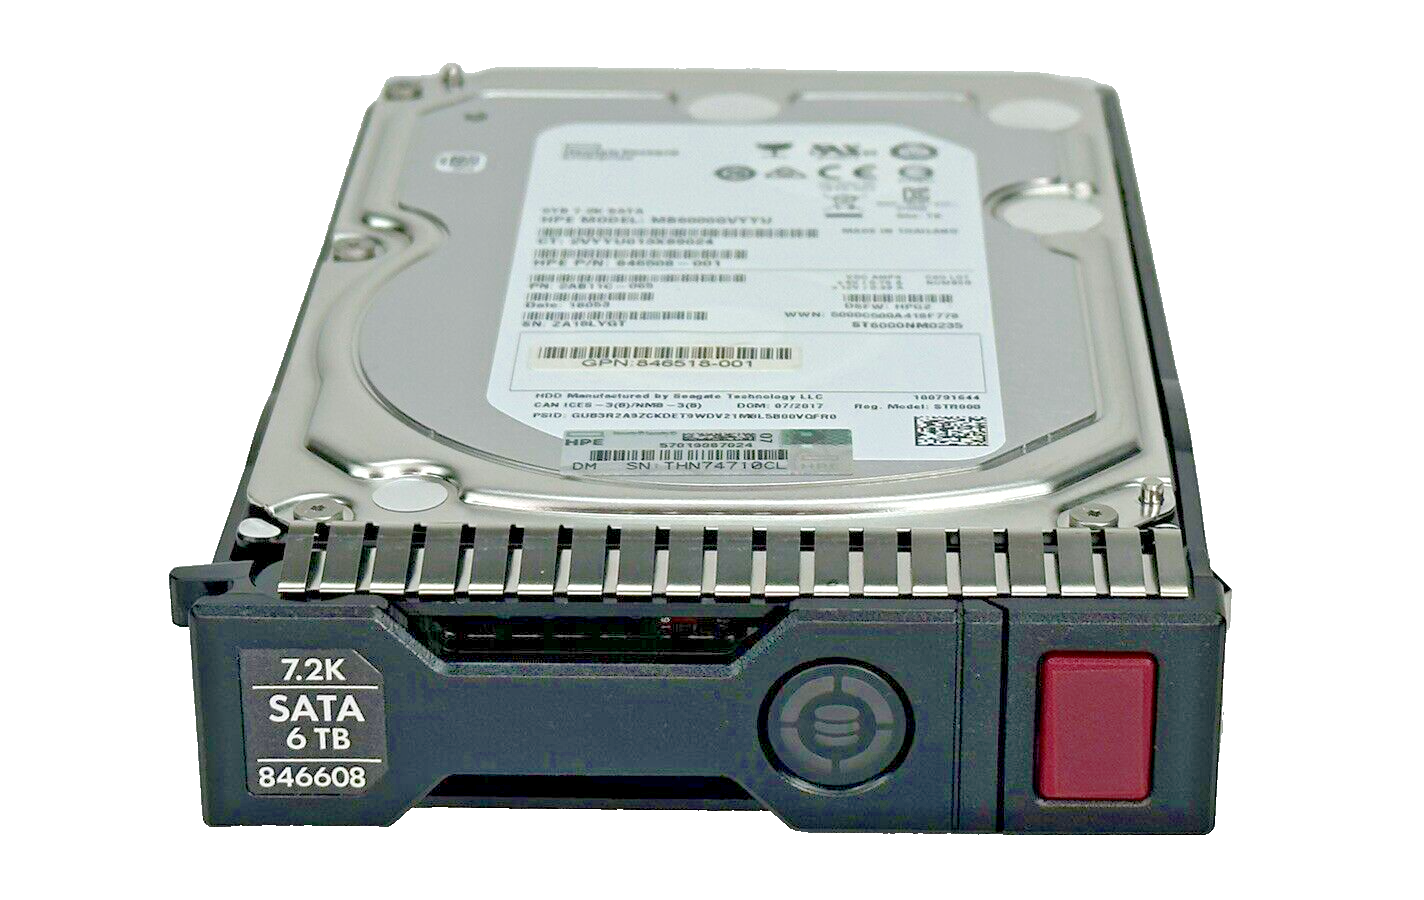 HPE 6TB SATA LFF HDD 7.2K 6G SC 3.5 Hard Drive 846608-001 Gen8, Gen9, Gen10